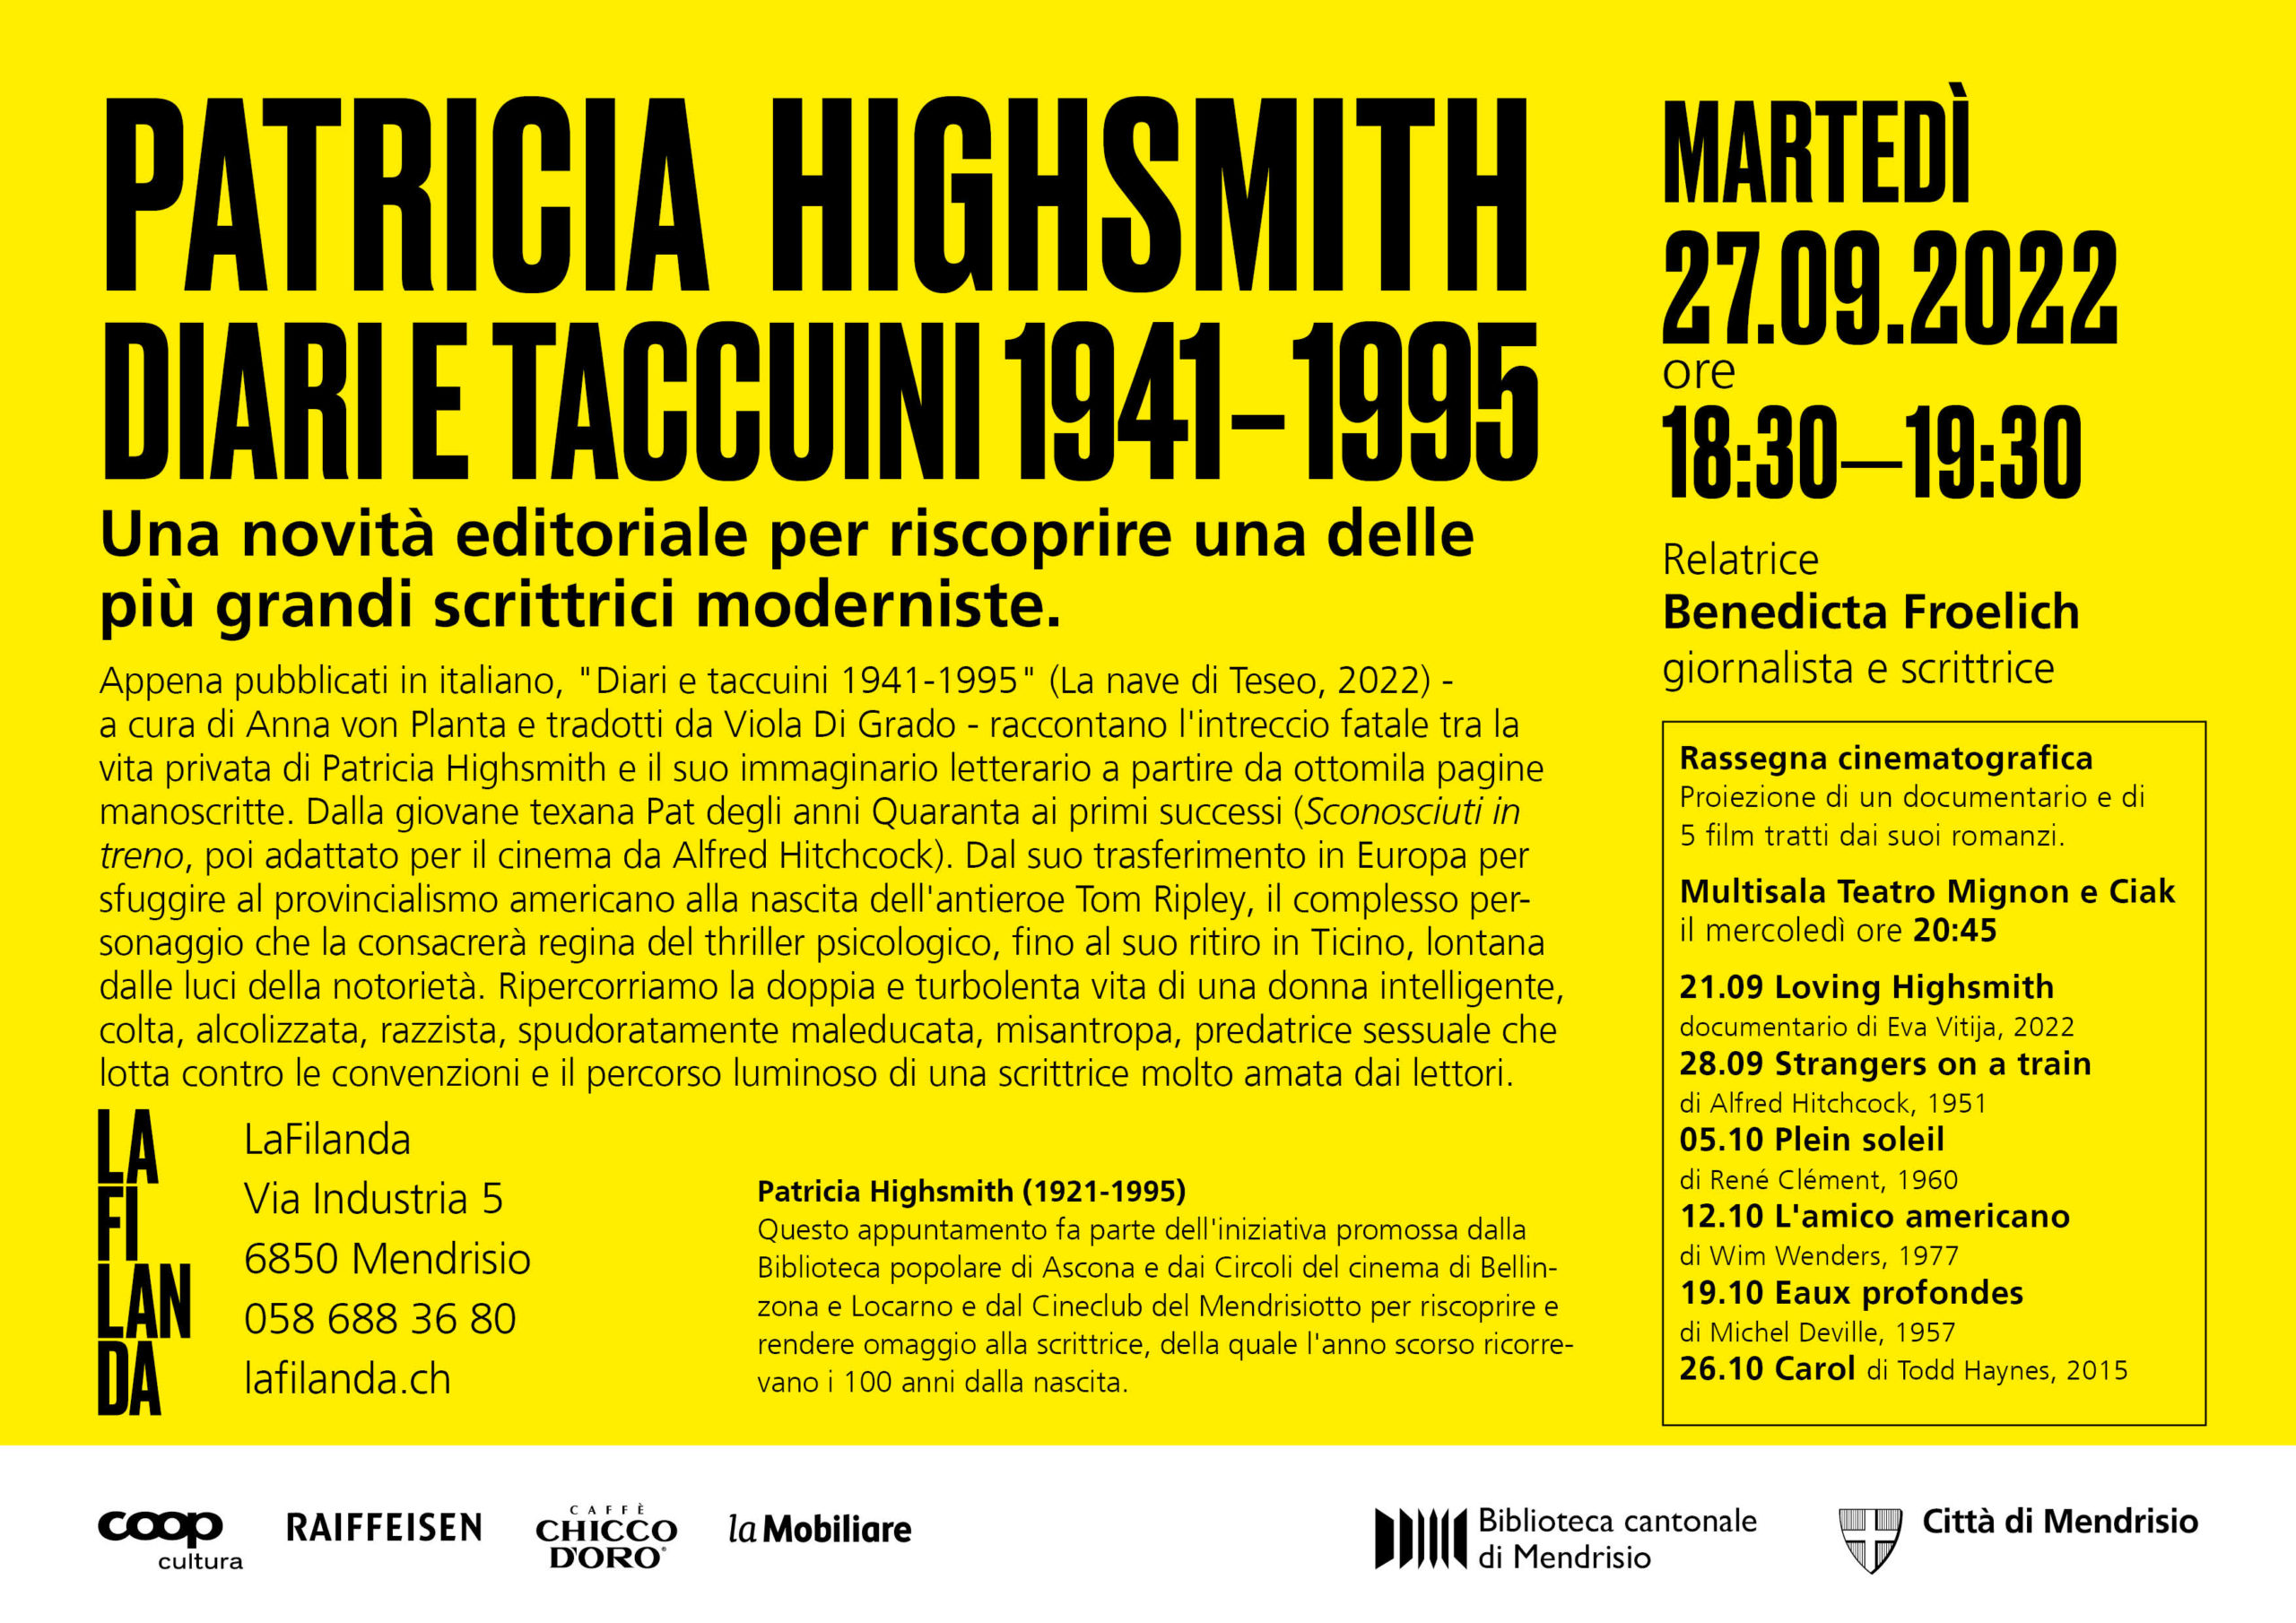 Patricia Highsmith Diari e taccuini 1941-1995